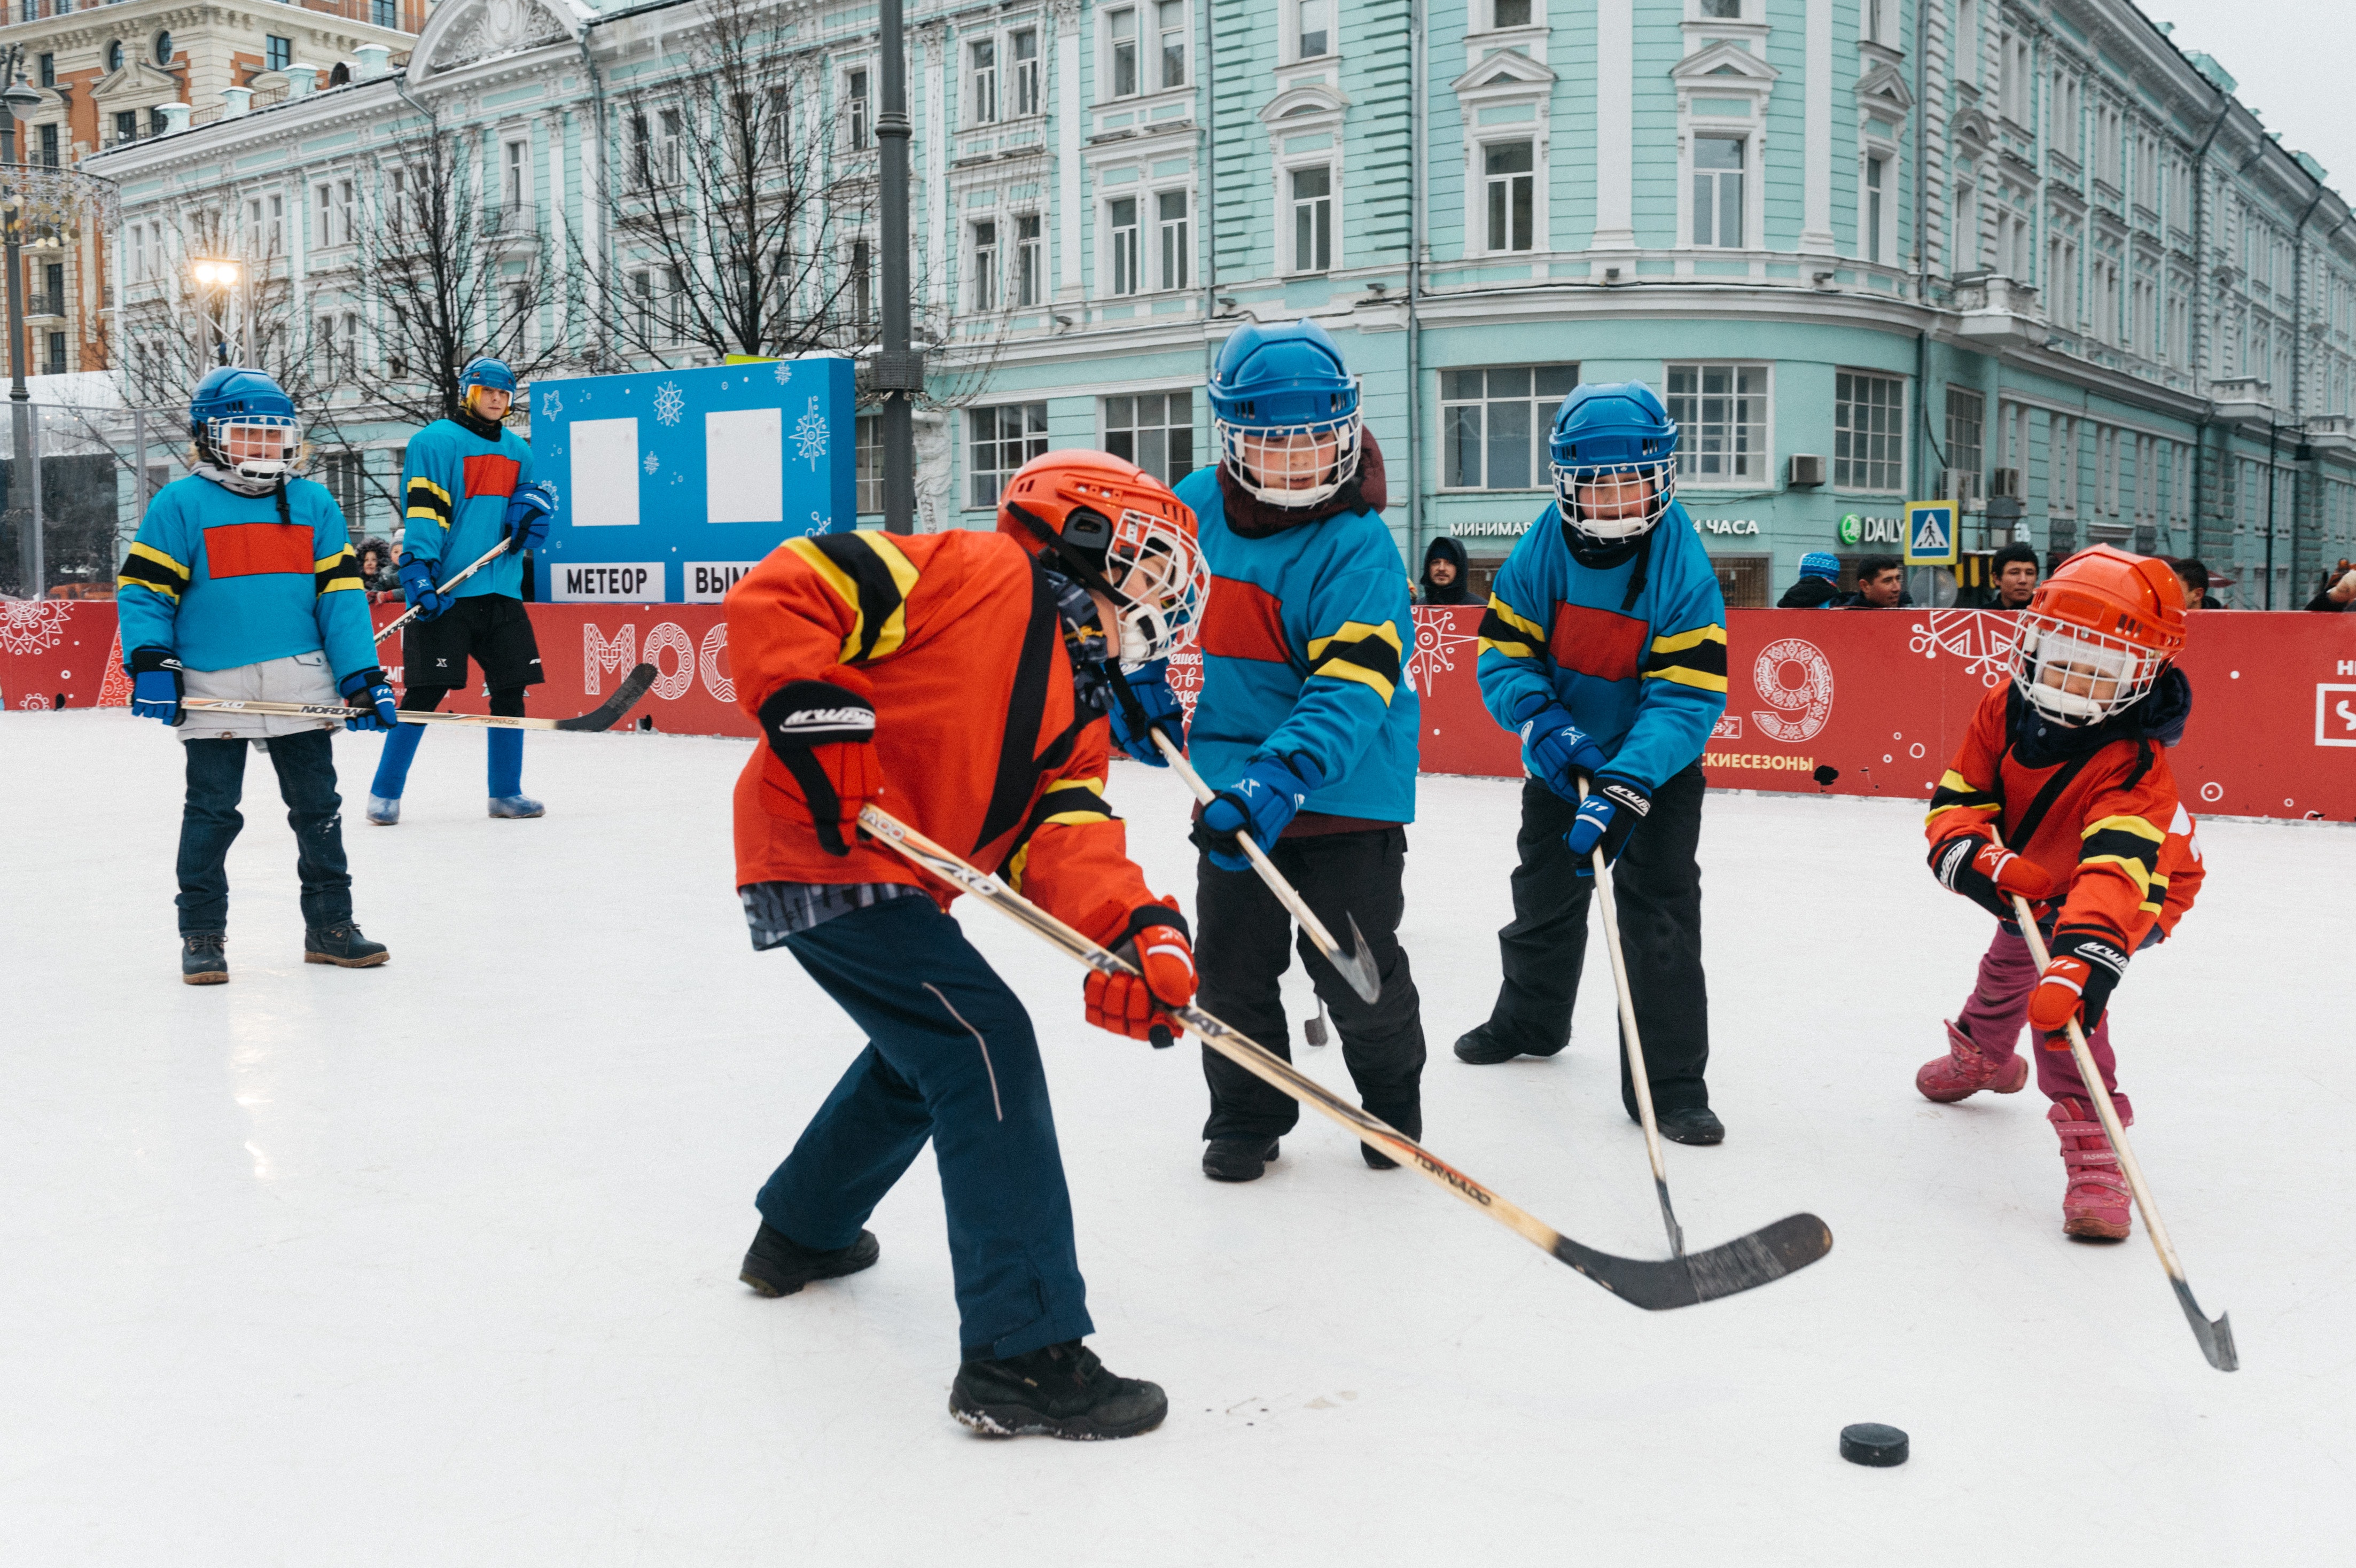 Grupo de niños jugando hockey. (Cortesía de Pexels)